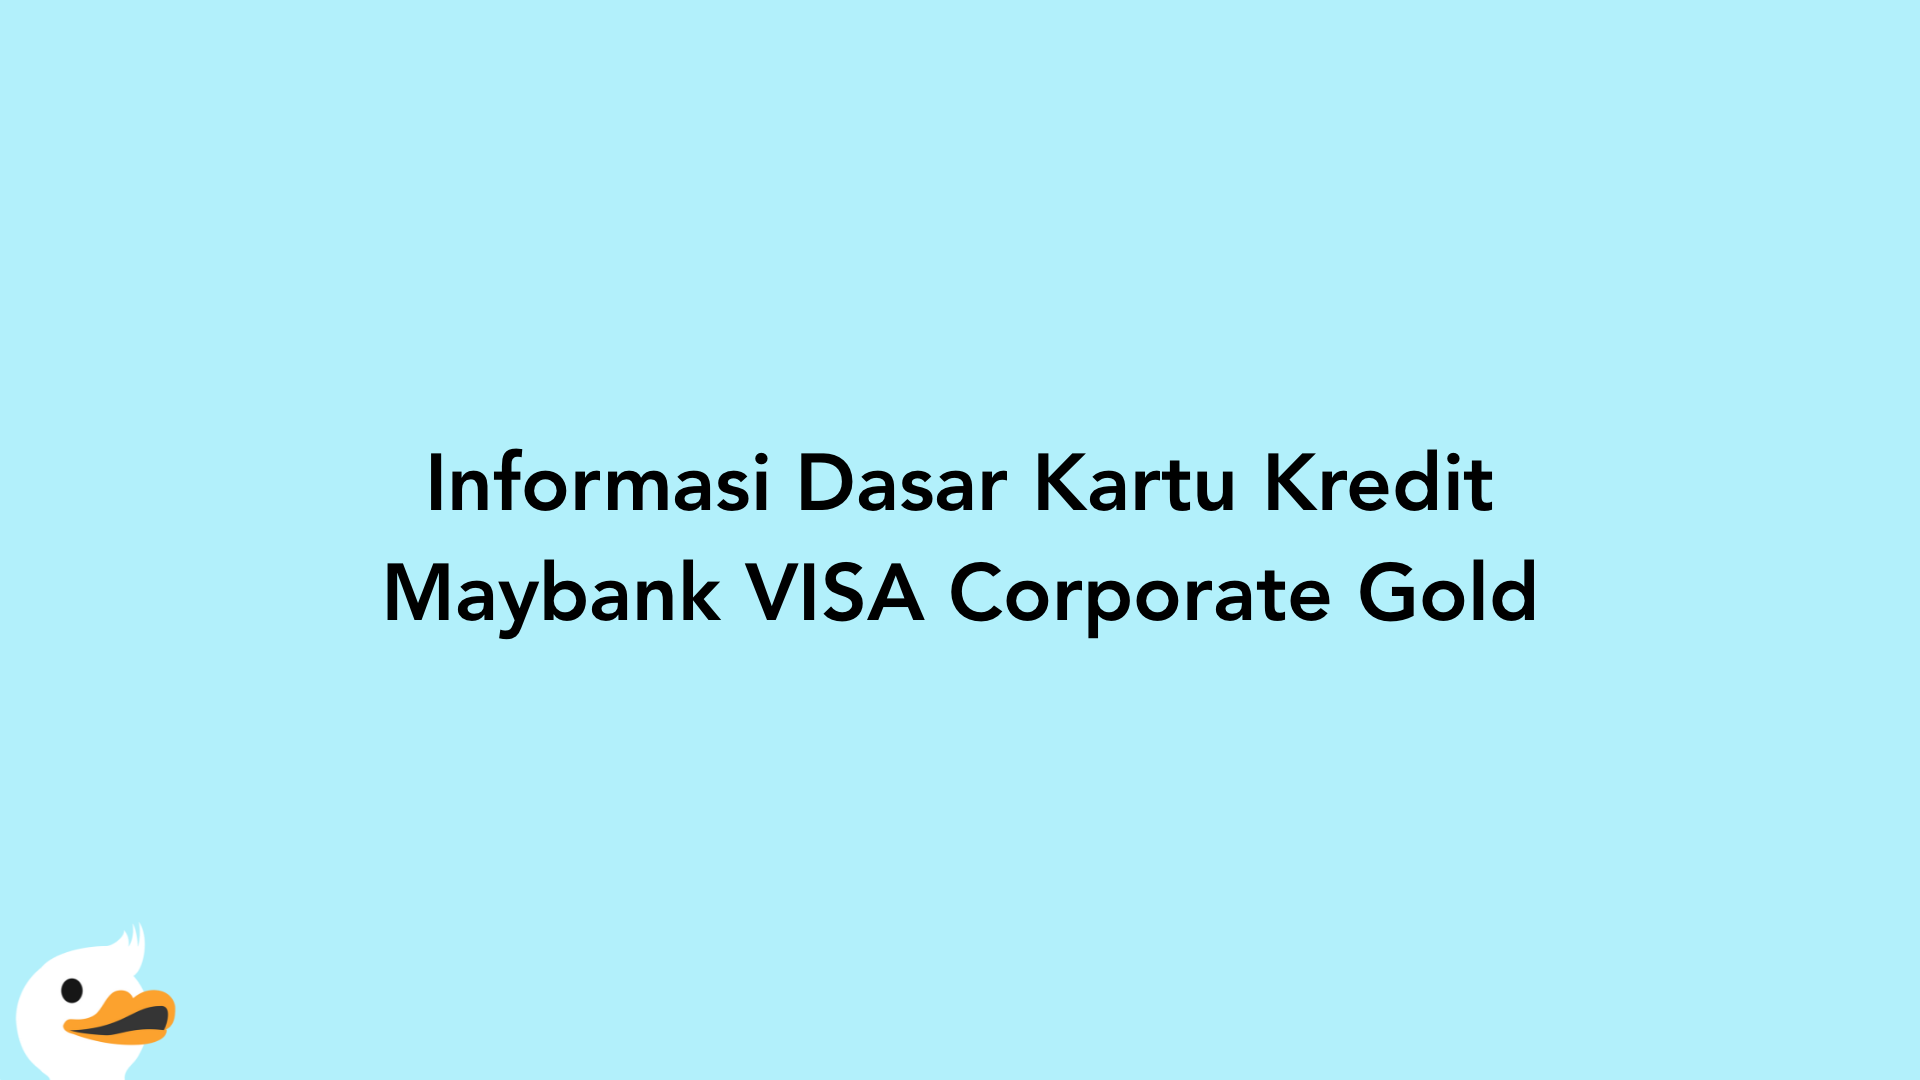 Informasi Dasar Kartu Kredit Maybank VISA Corporate Gold